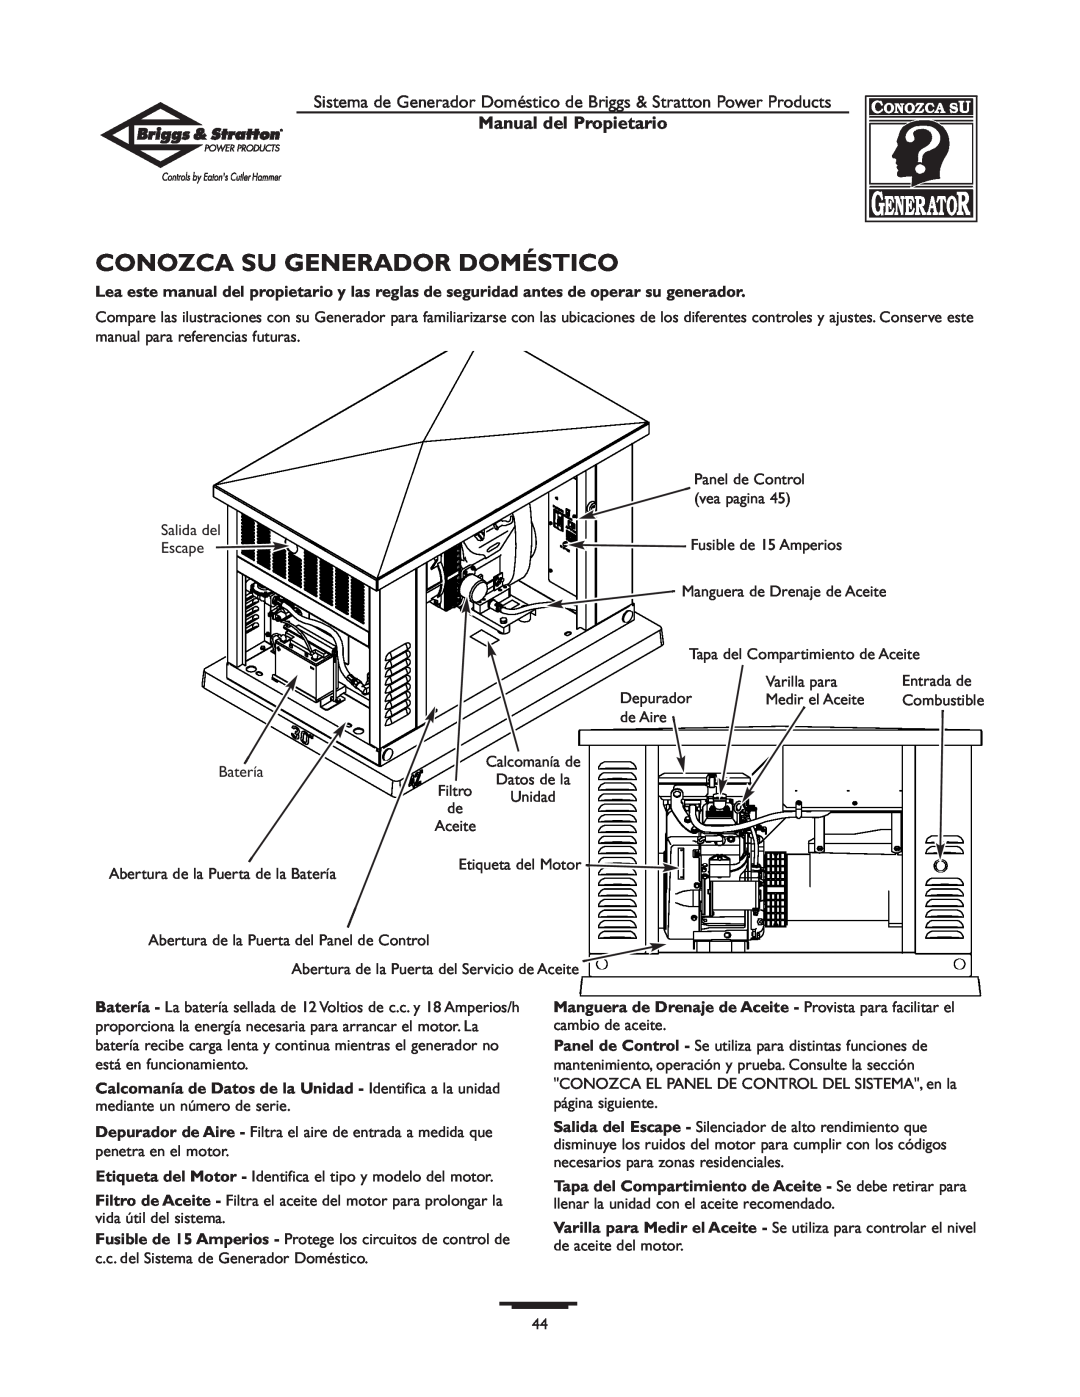 Briggs & Stratton 190839GS owner manual Conozca Su Generador Doméstico, Manual del Propietario 